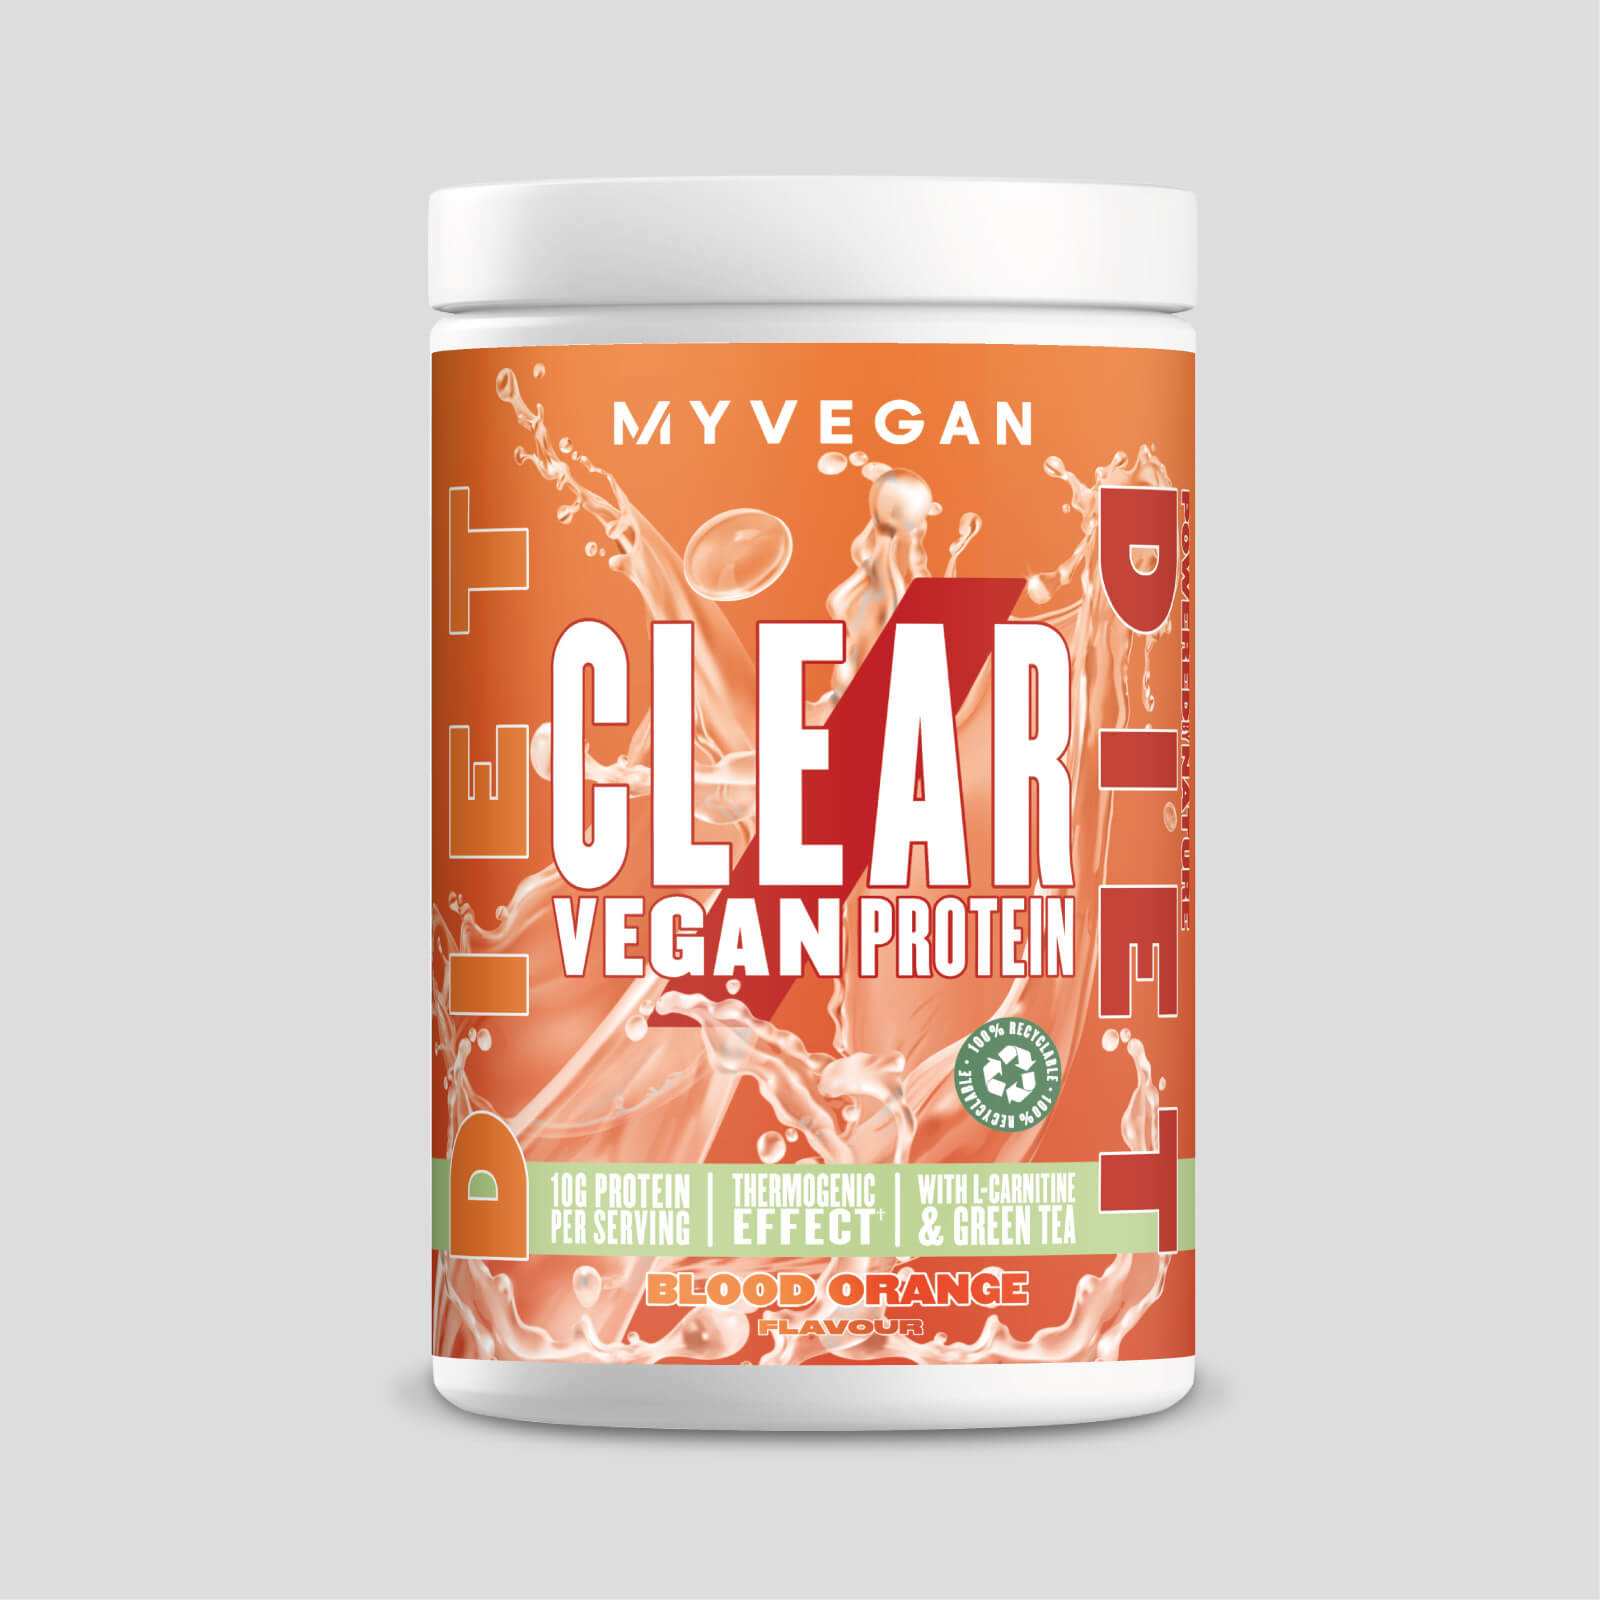 Myvegan Clear vegan protein diet - 20servings - blood orange